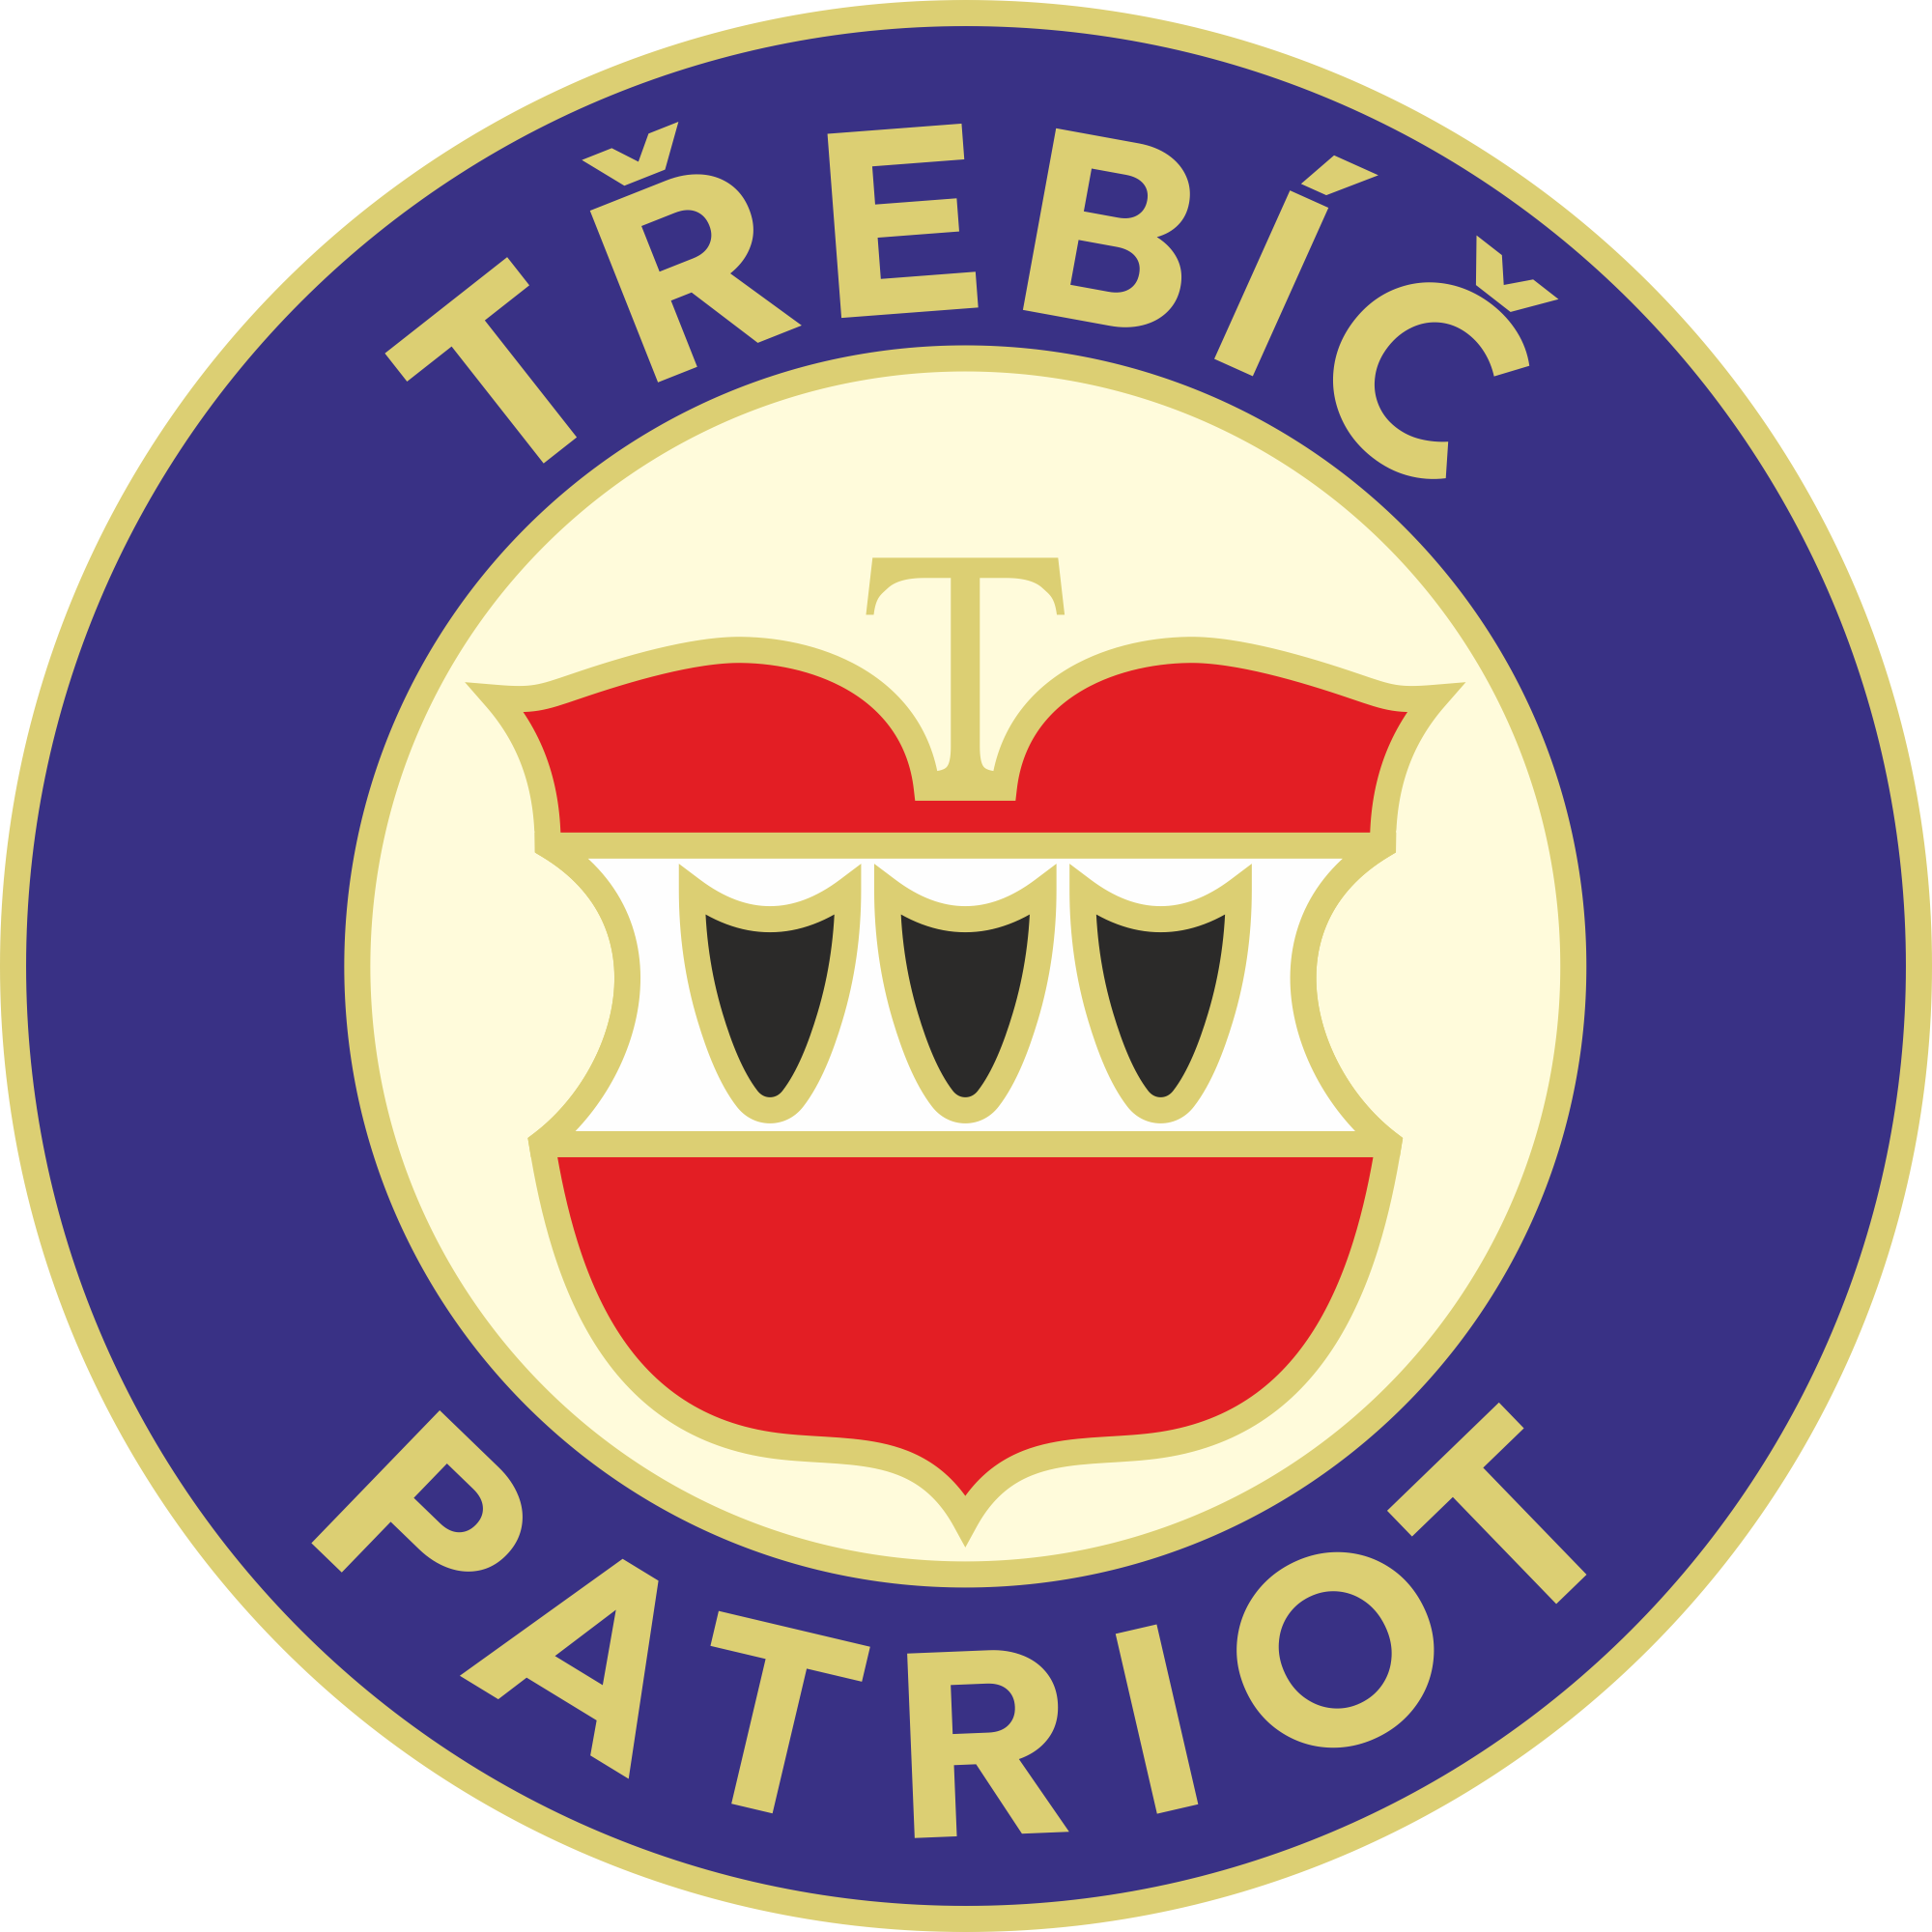 Odznak Třebíčský patriot